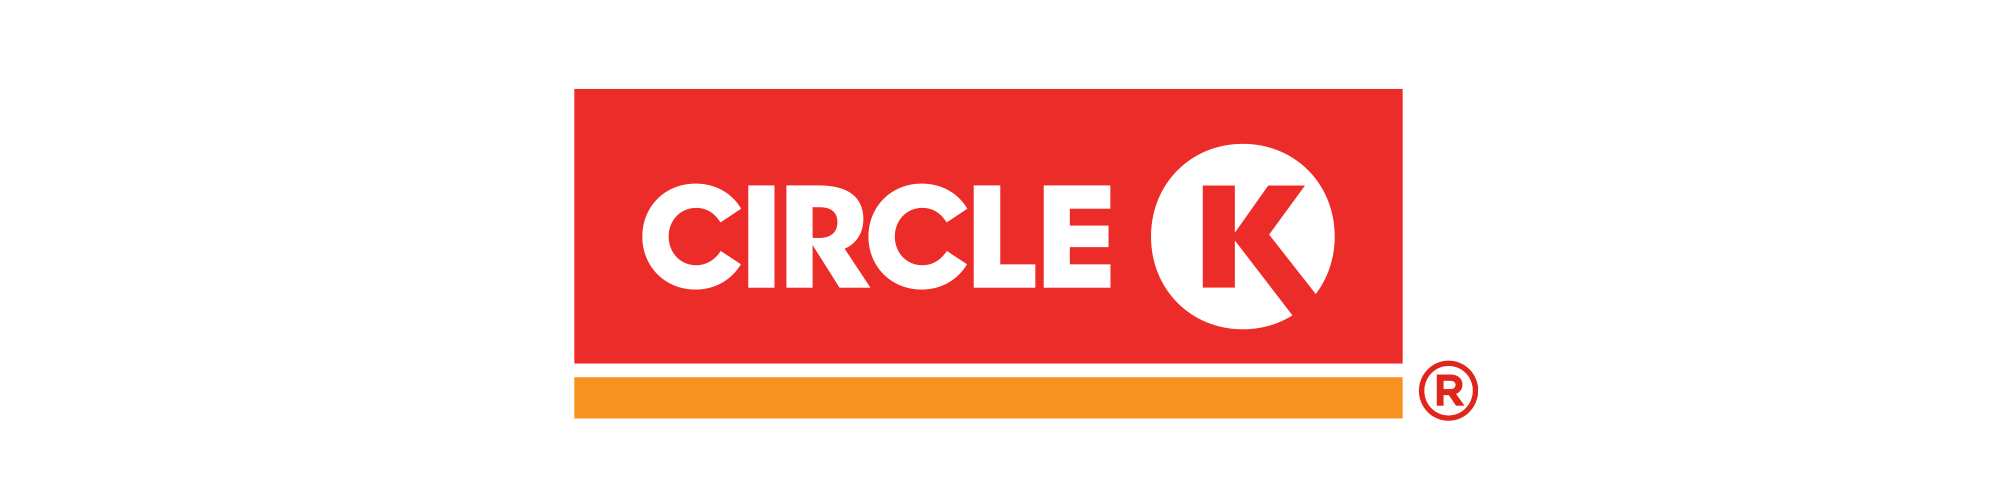 logo_CK.png